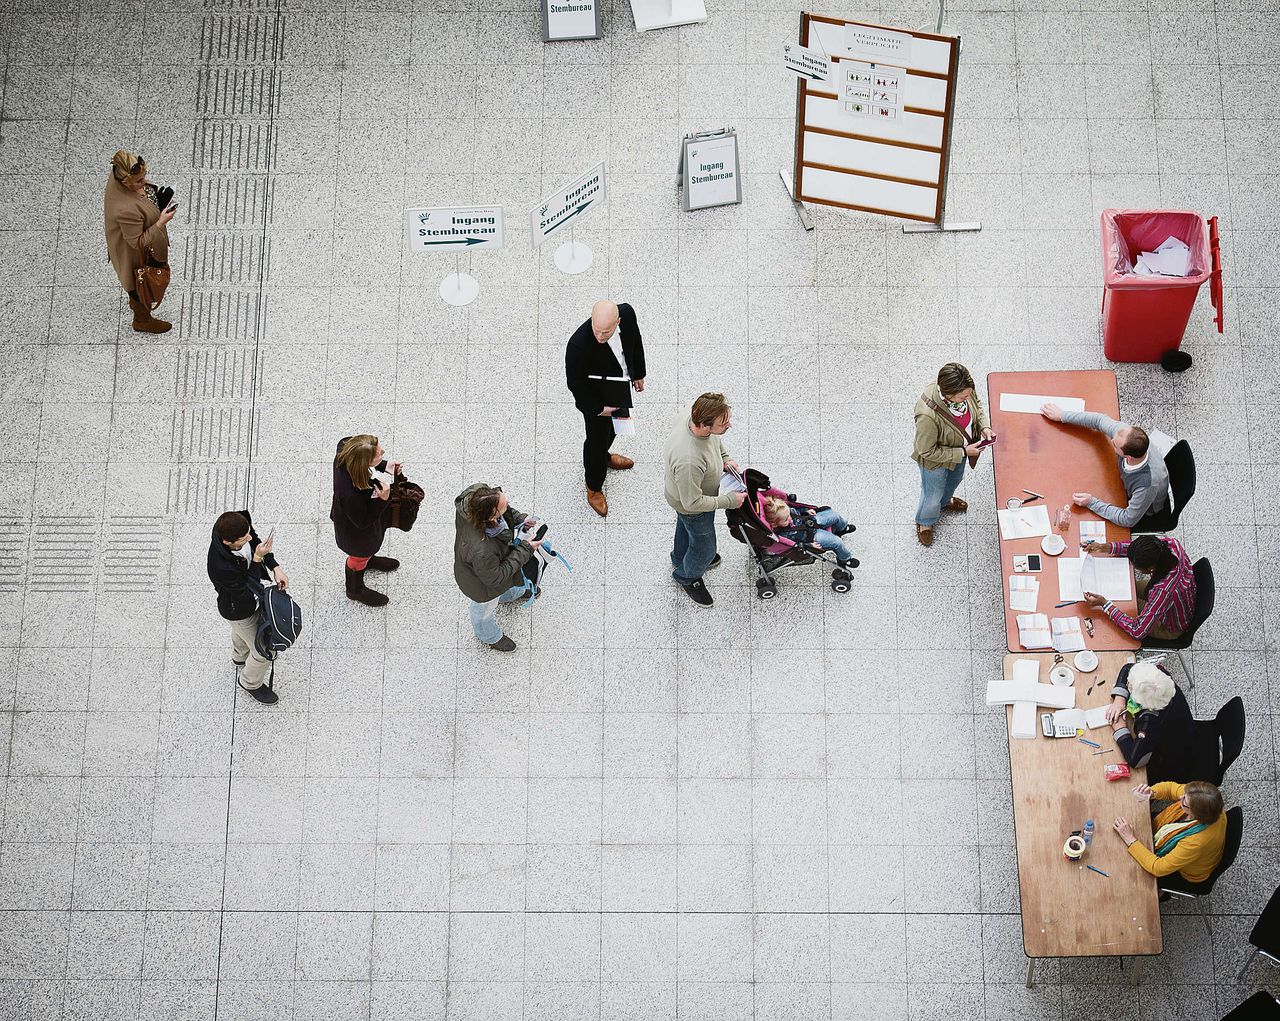 Stemmen in het stadhuis in Den Haag, september 2012, voor de Tweede Kamer.